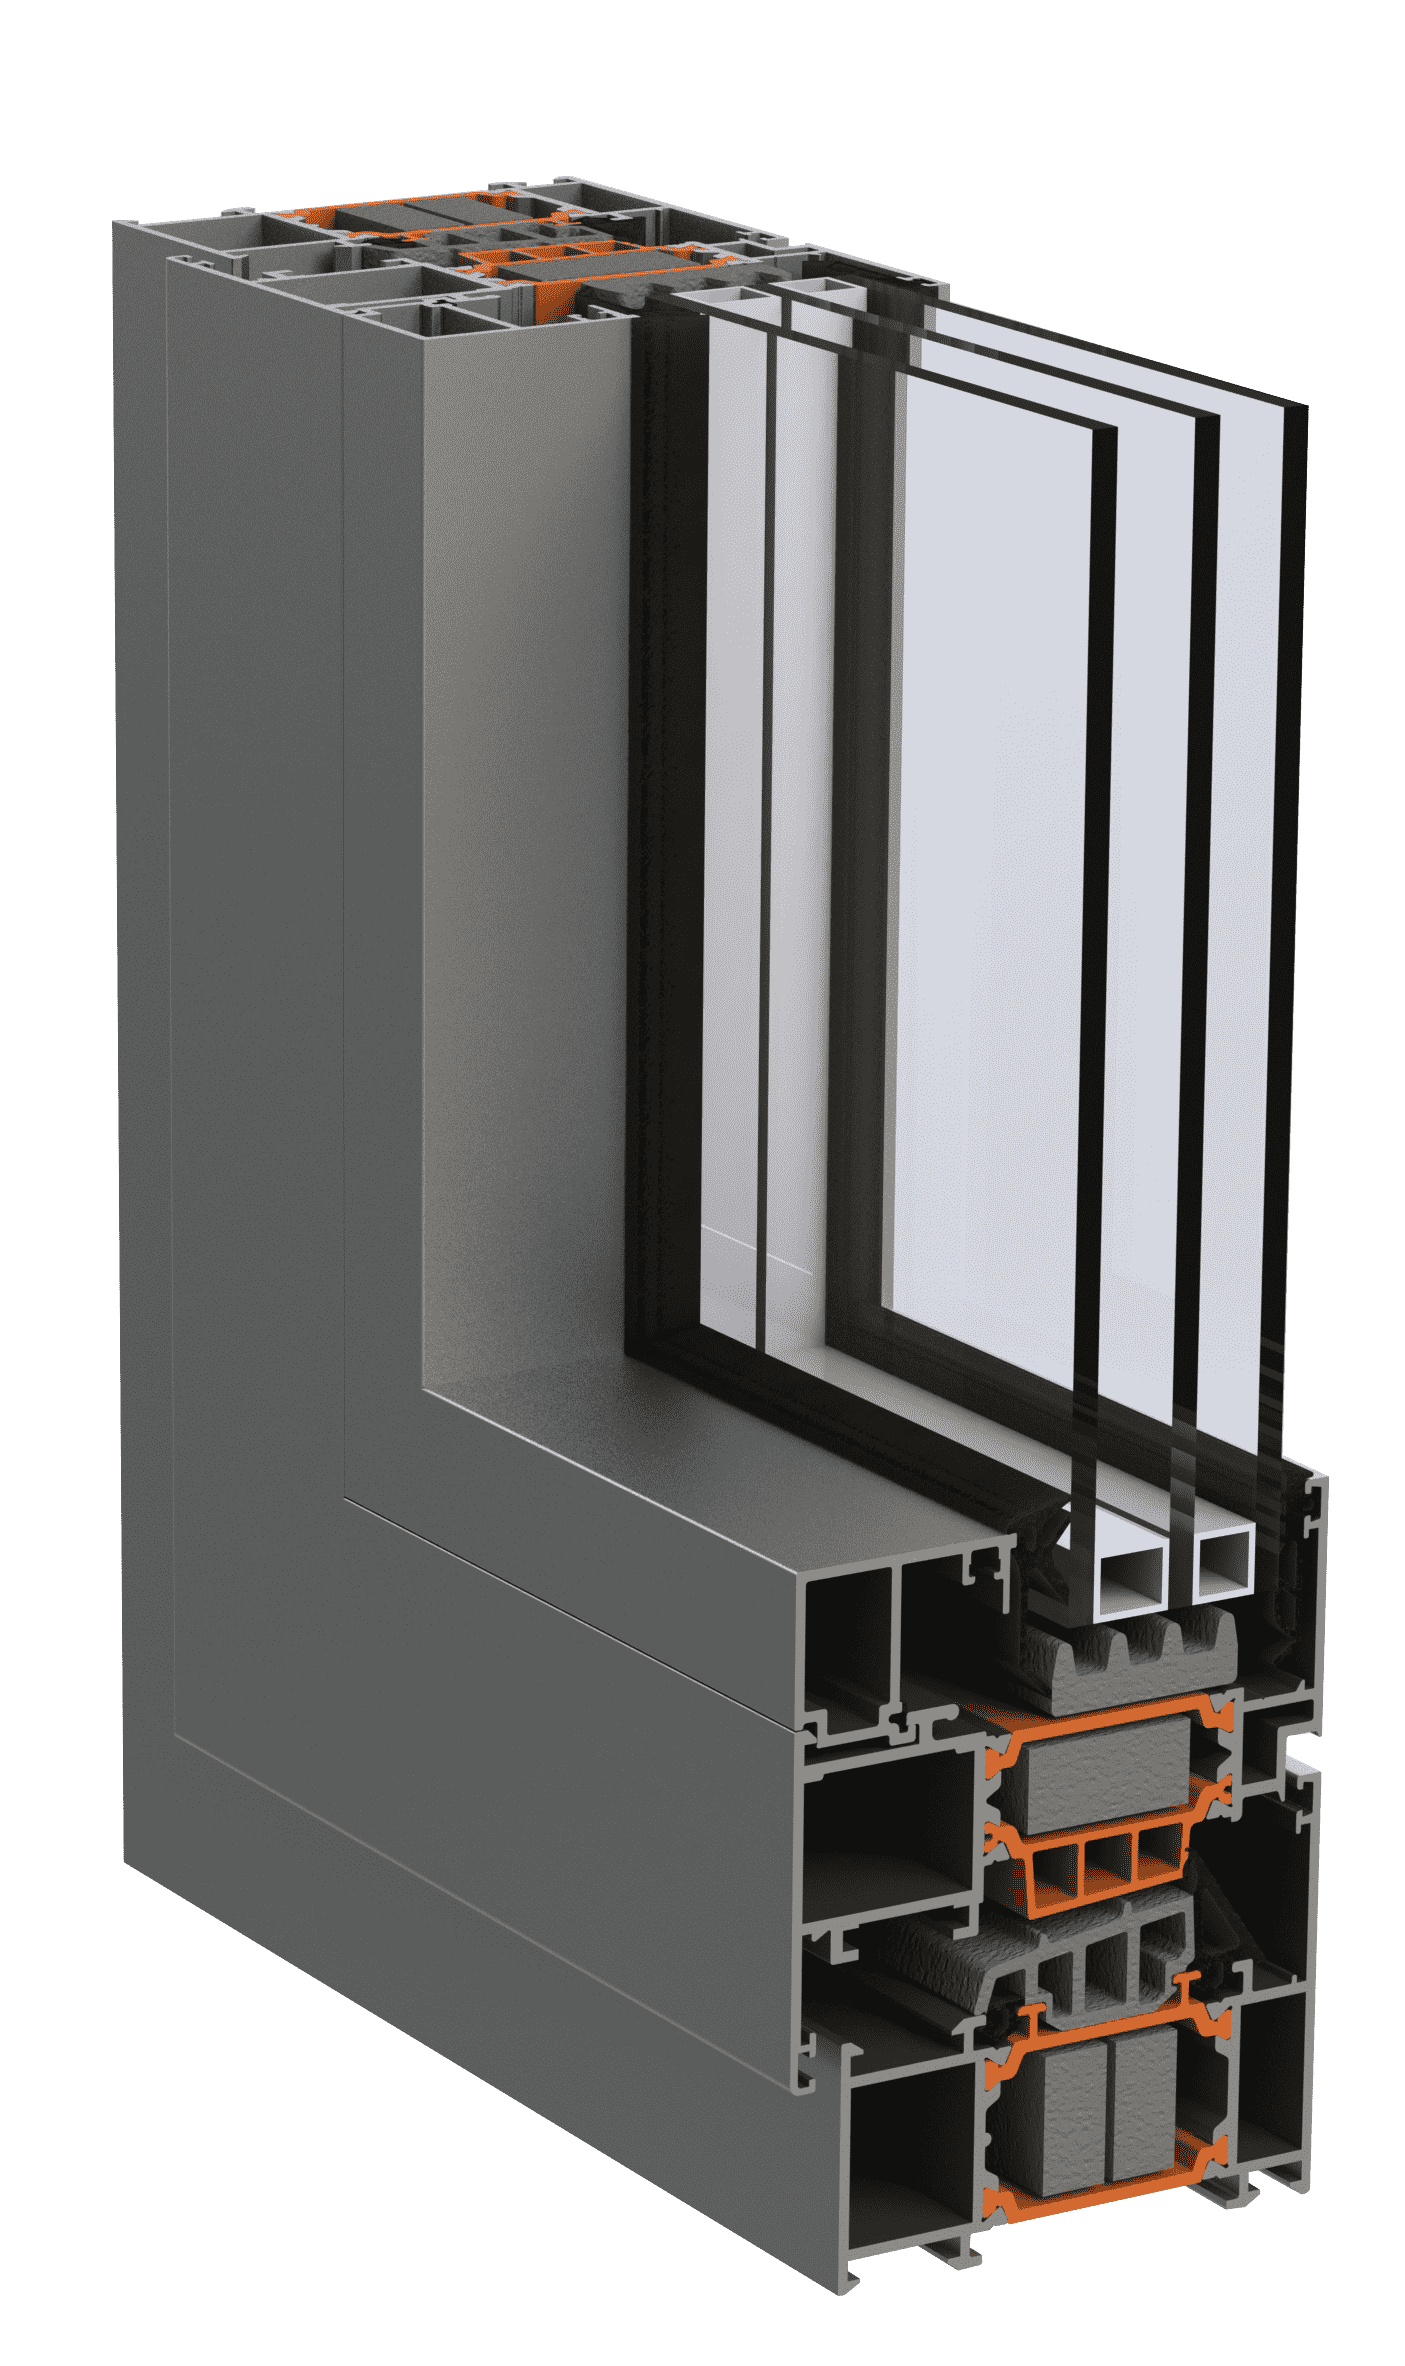 Віконно-дверна алюмінієва система alumil s77 для дилерів EKIPAZH. Вигідні умови для дилерства